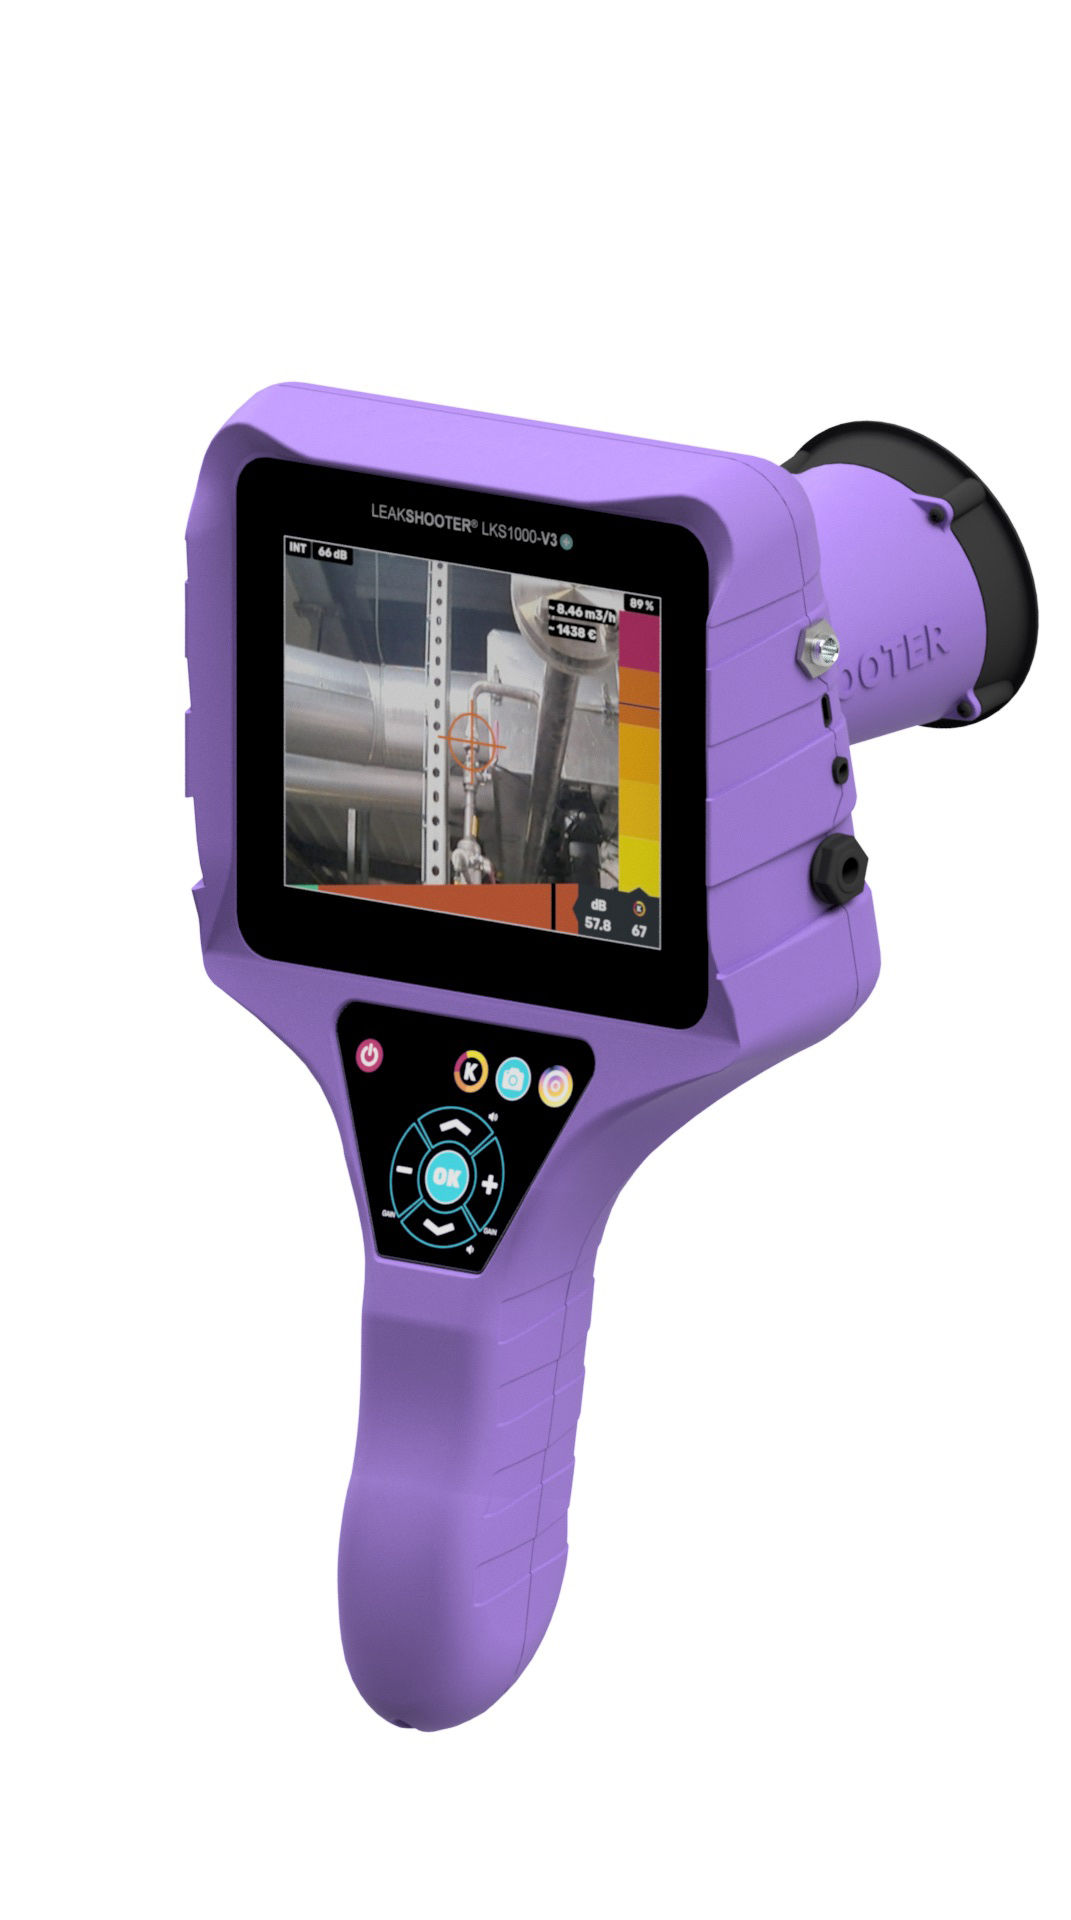 LEAKSHOOTER® V3+PRO: Leckagesuchgerät mit integrierter Wärmebildkamera